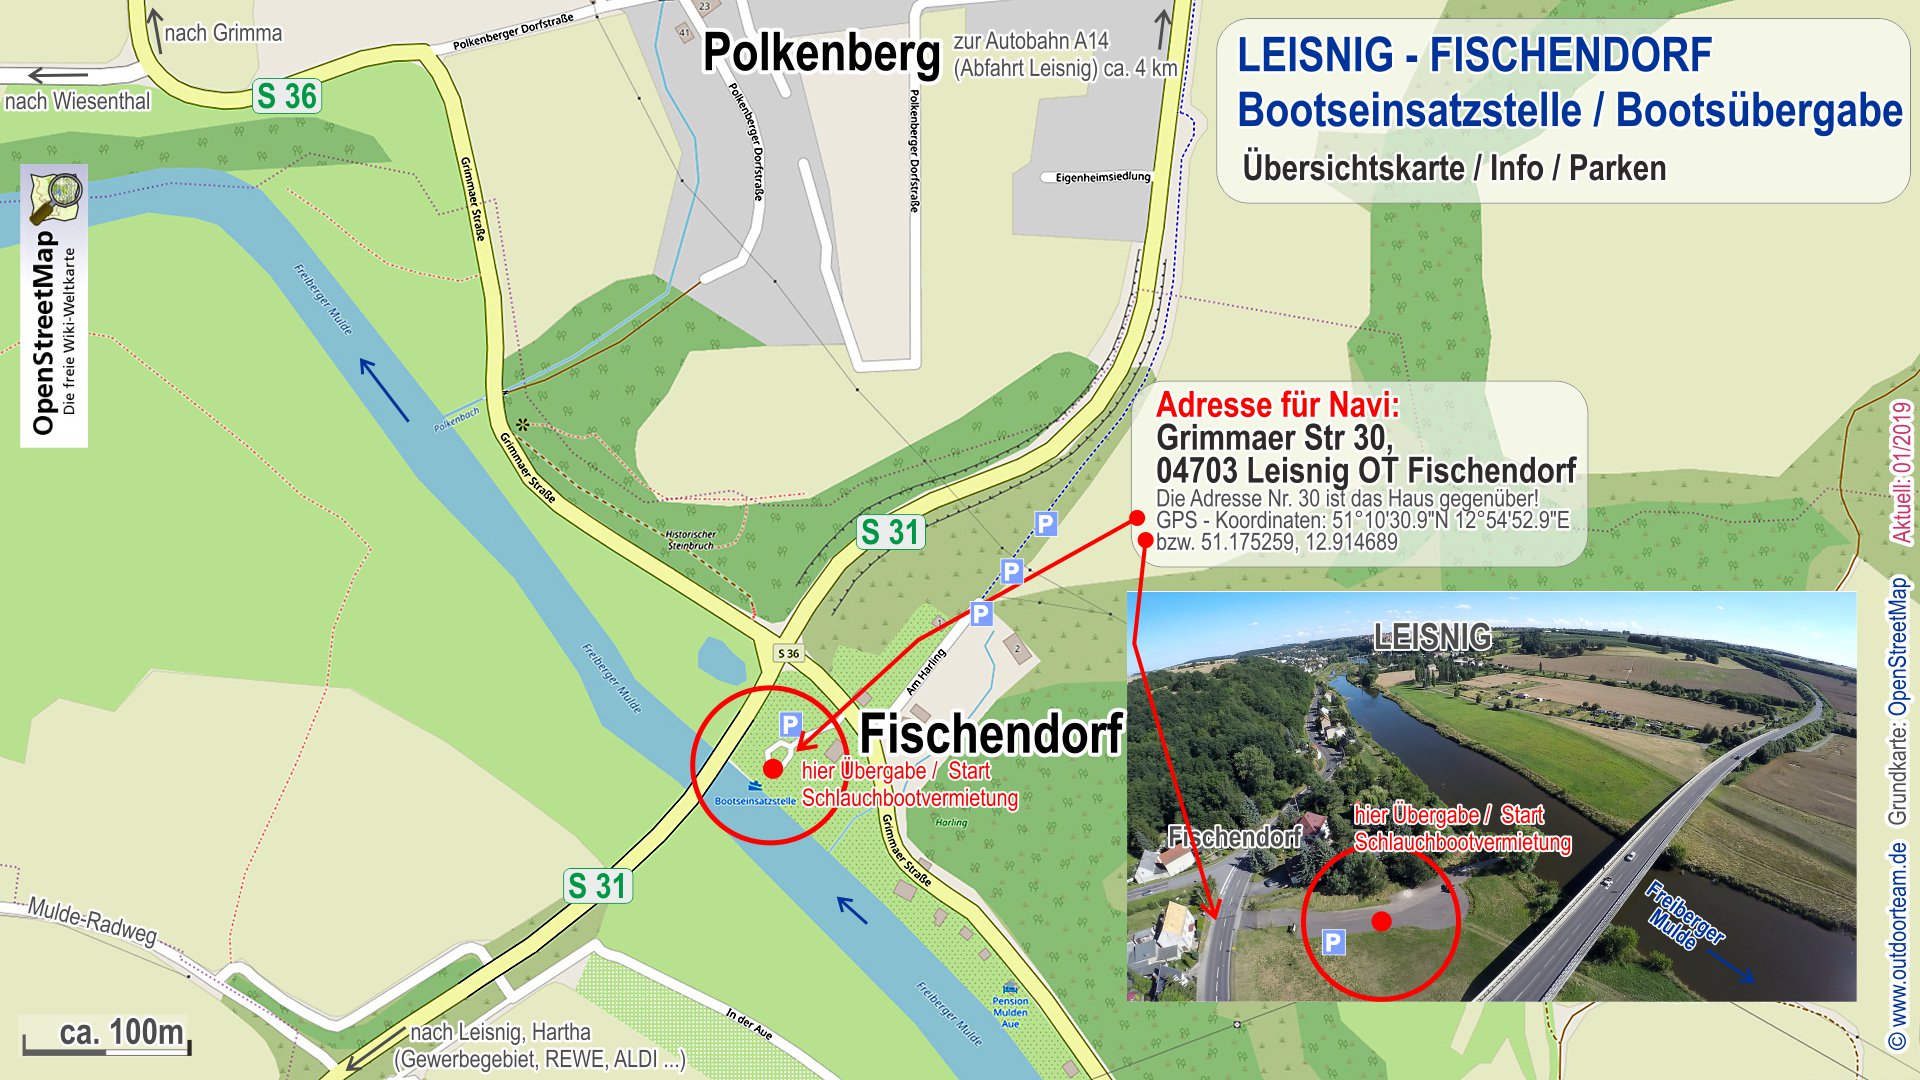 Detailkarte vom Treffpunkt bzw. Bootsausgabe Leisnig Fischendorf (Schlauchboot Vermietung Strecke C)